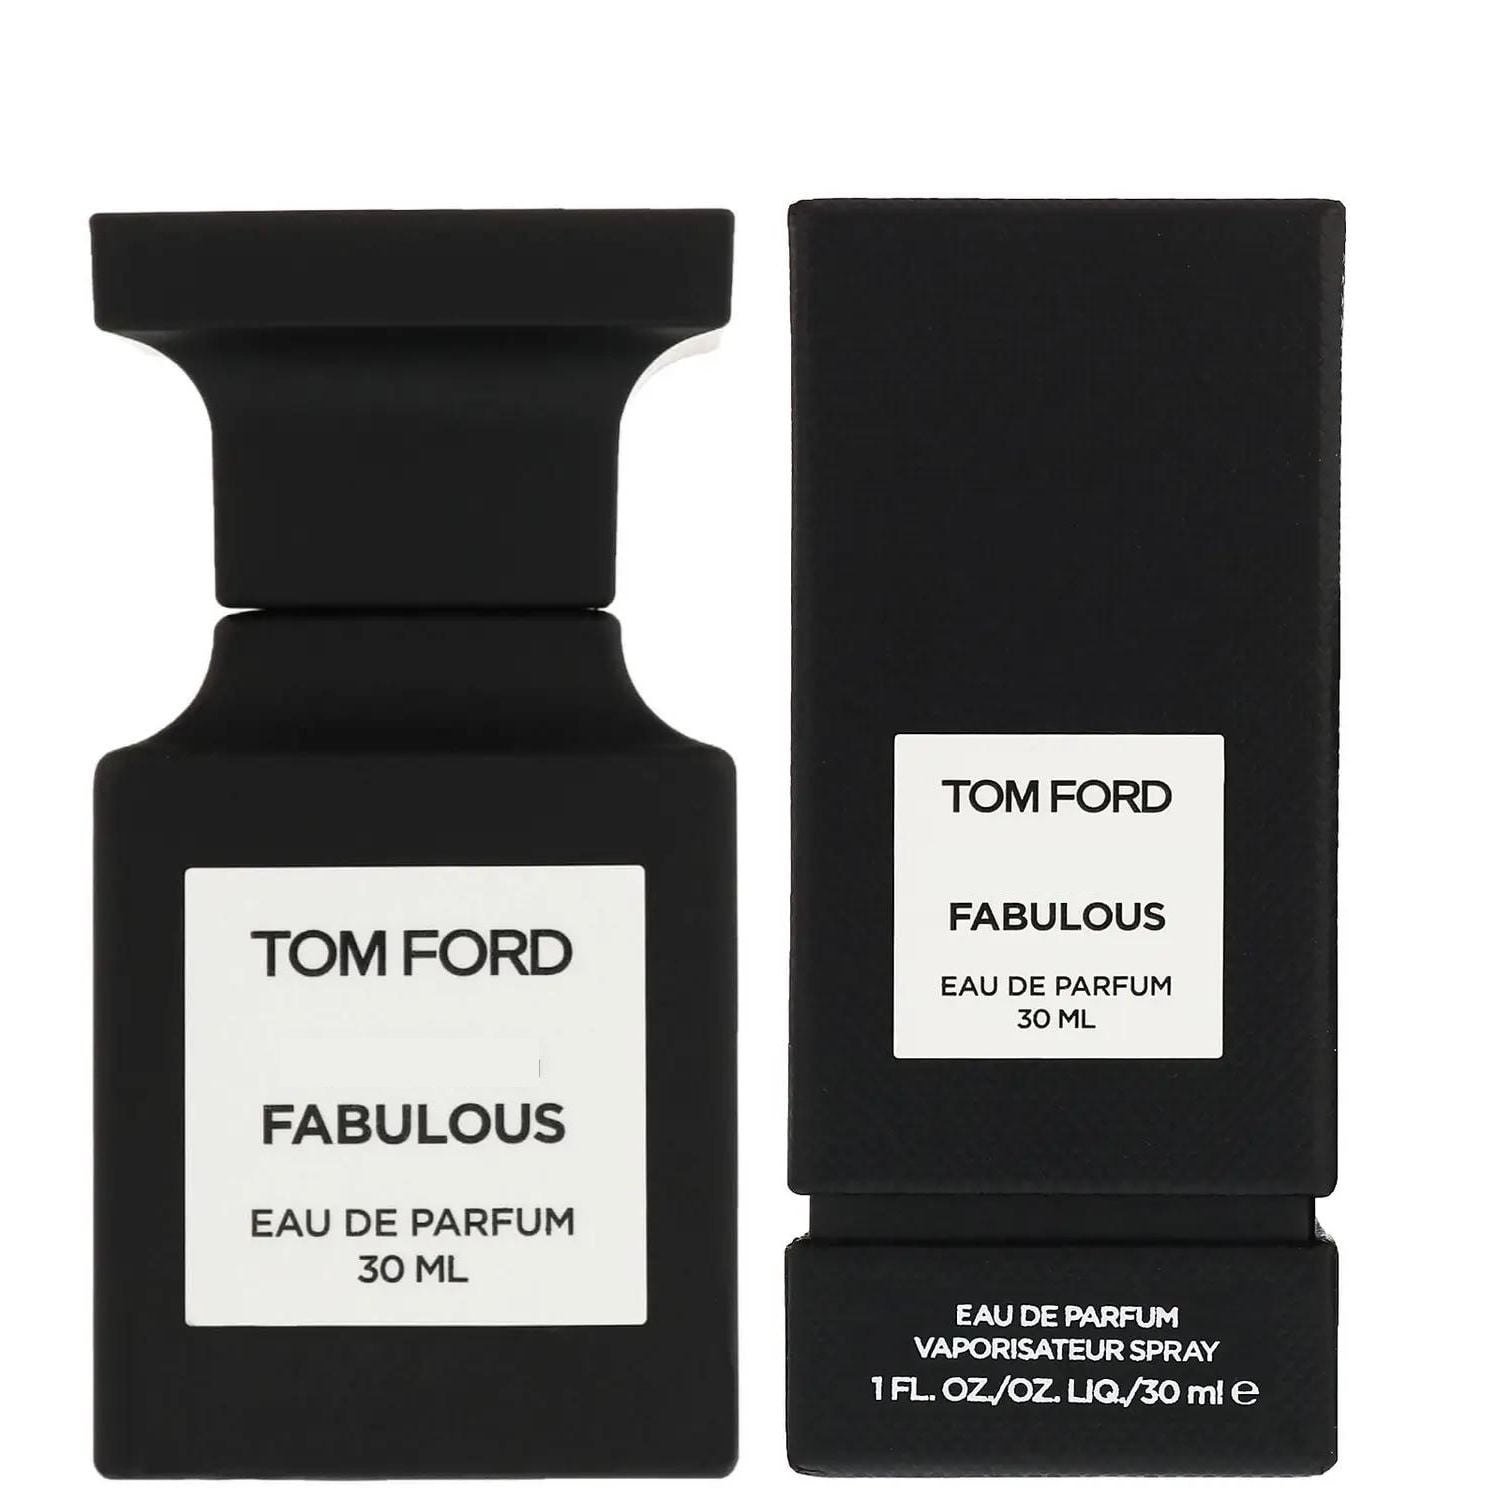 Tom Ford Fabulous Eau de Parfum Spray 30 ml / 1 oz - Walmart.com